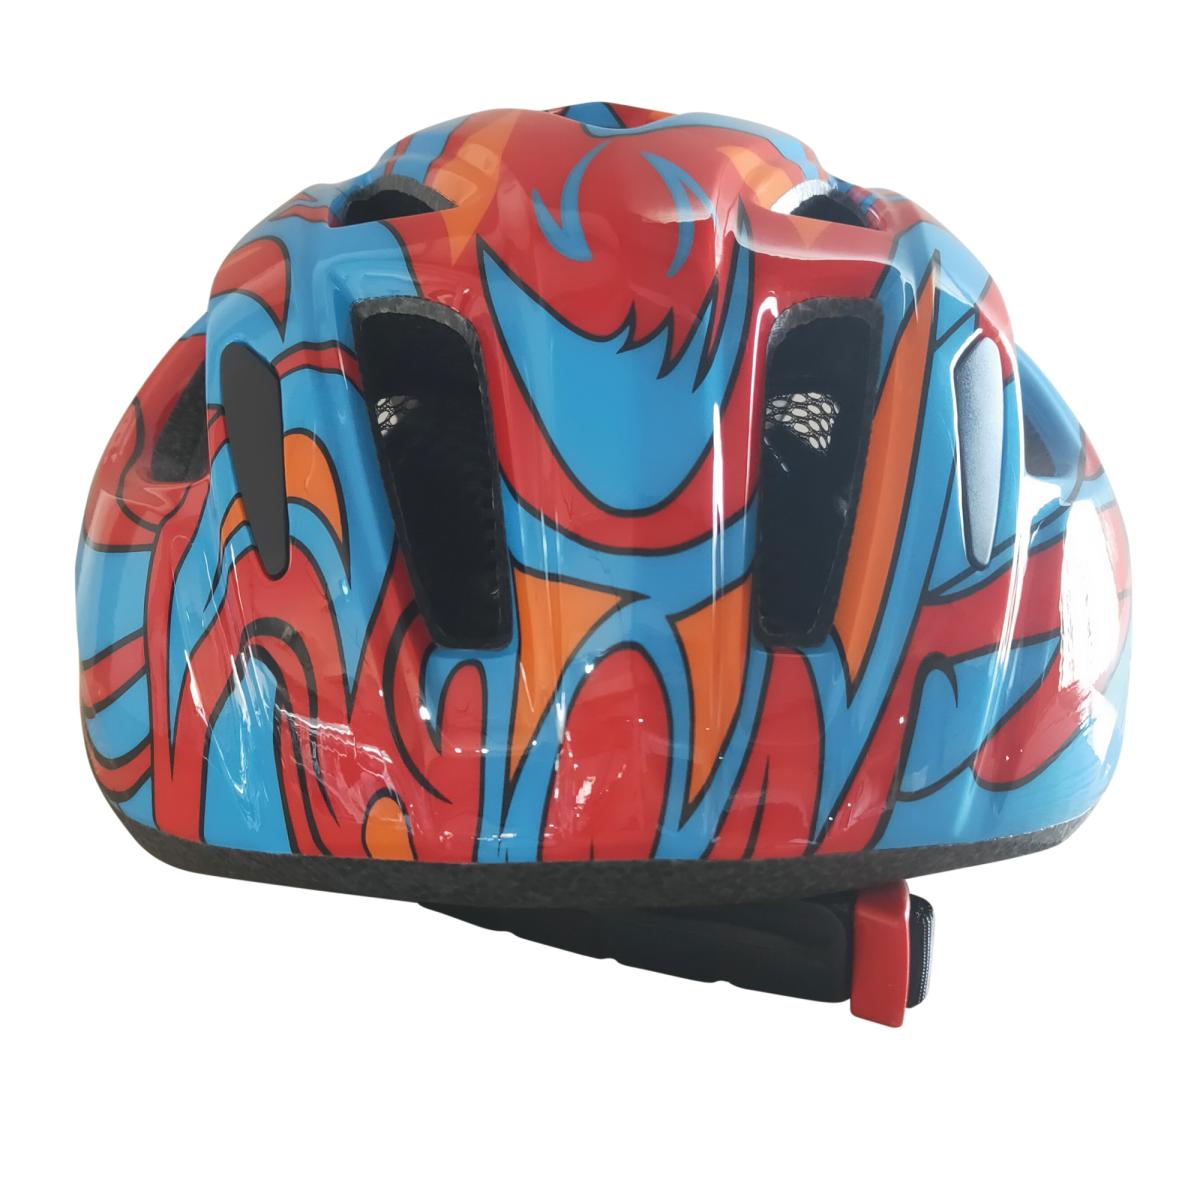 レブスポーツ 自転車用インモールドヘルメット 子供用 S/M レッド/ブルー